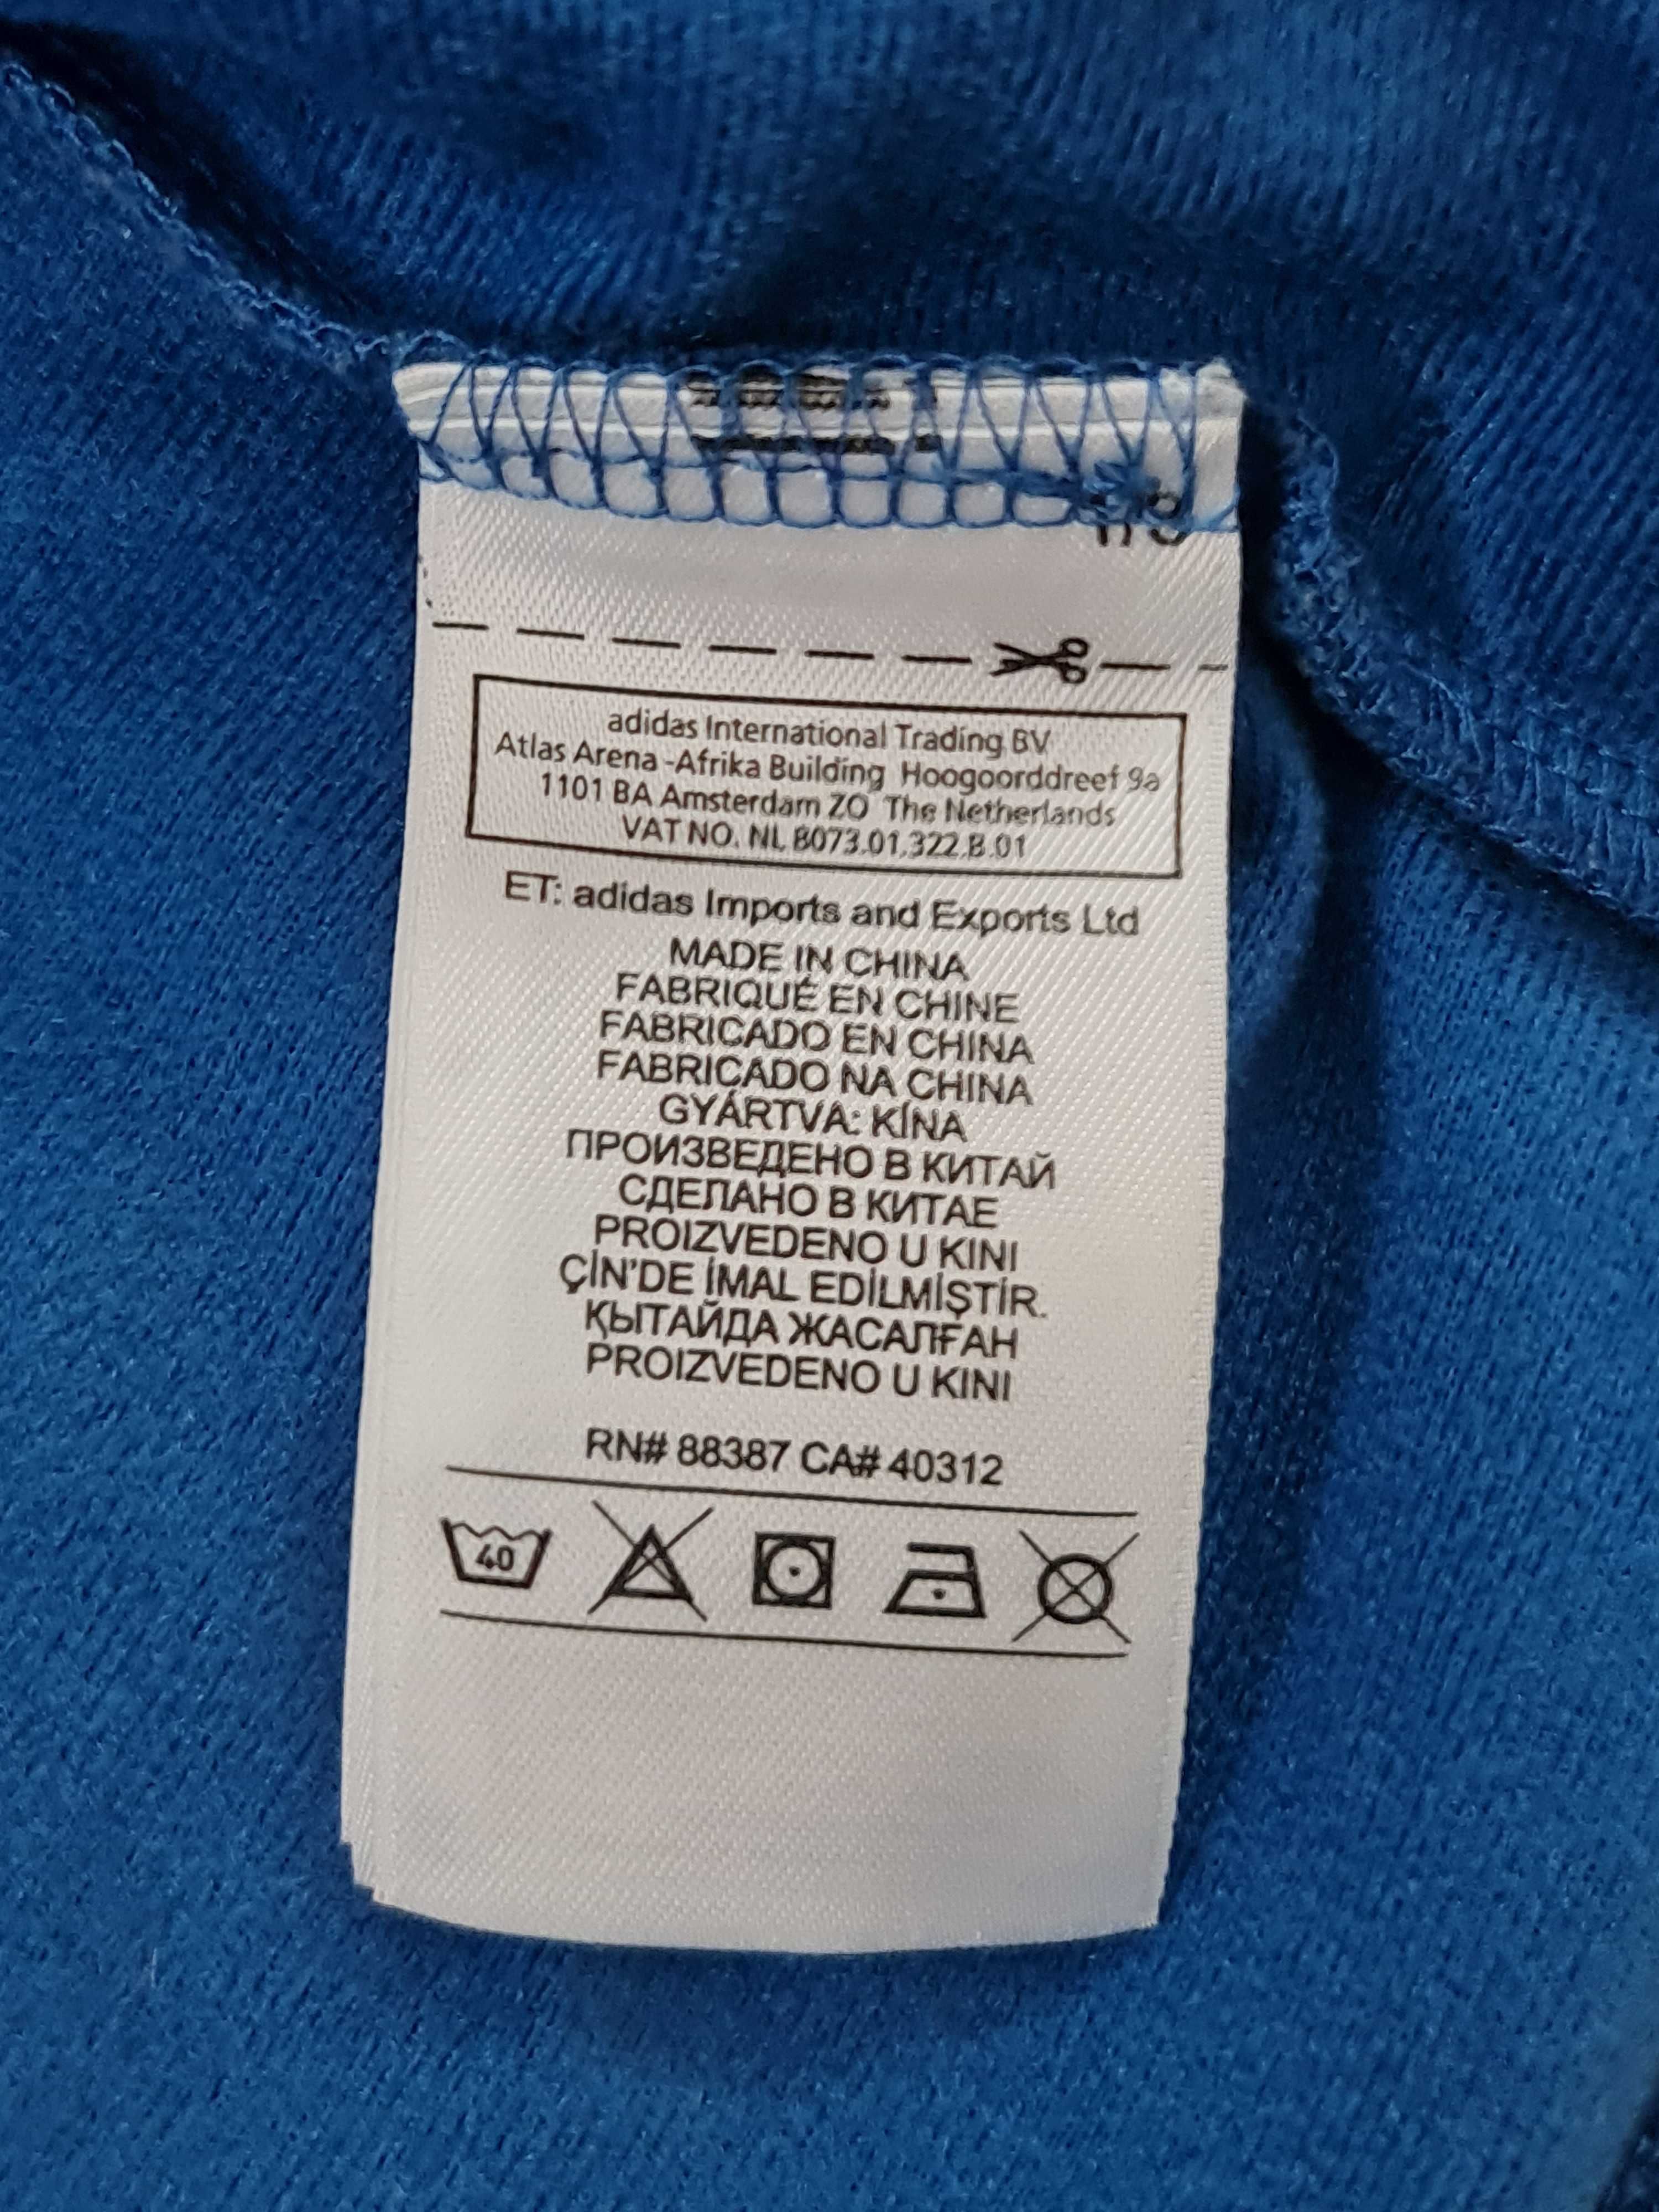 Bluza Adidas Zip zasuwana Rozmiar 98 - 104 na Wiek 3 a 4 Lat